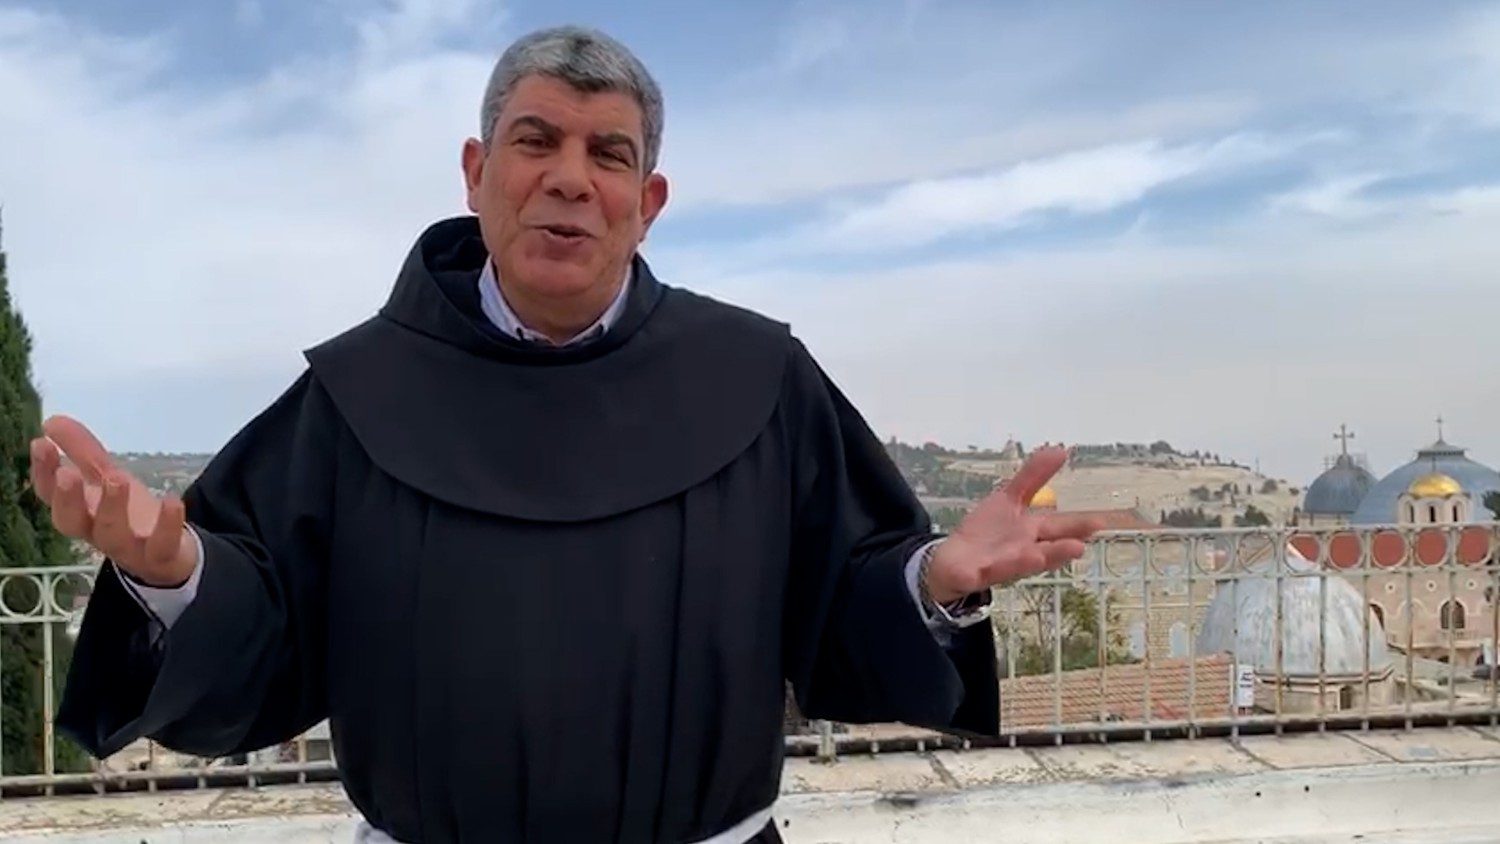 Padre Faltas: El Papa es el único que dice “alto el fuego” - Vatican News